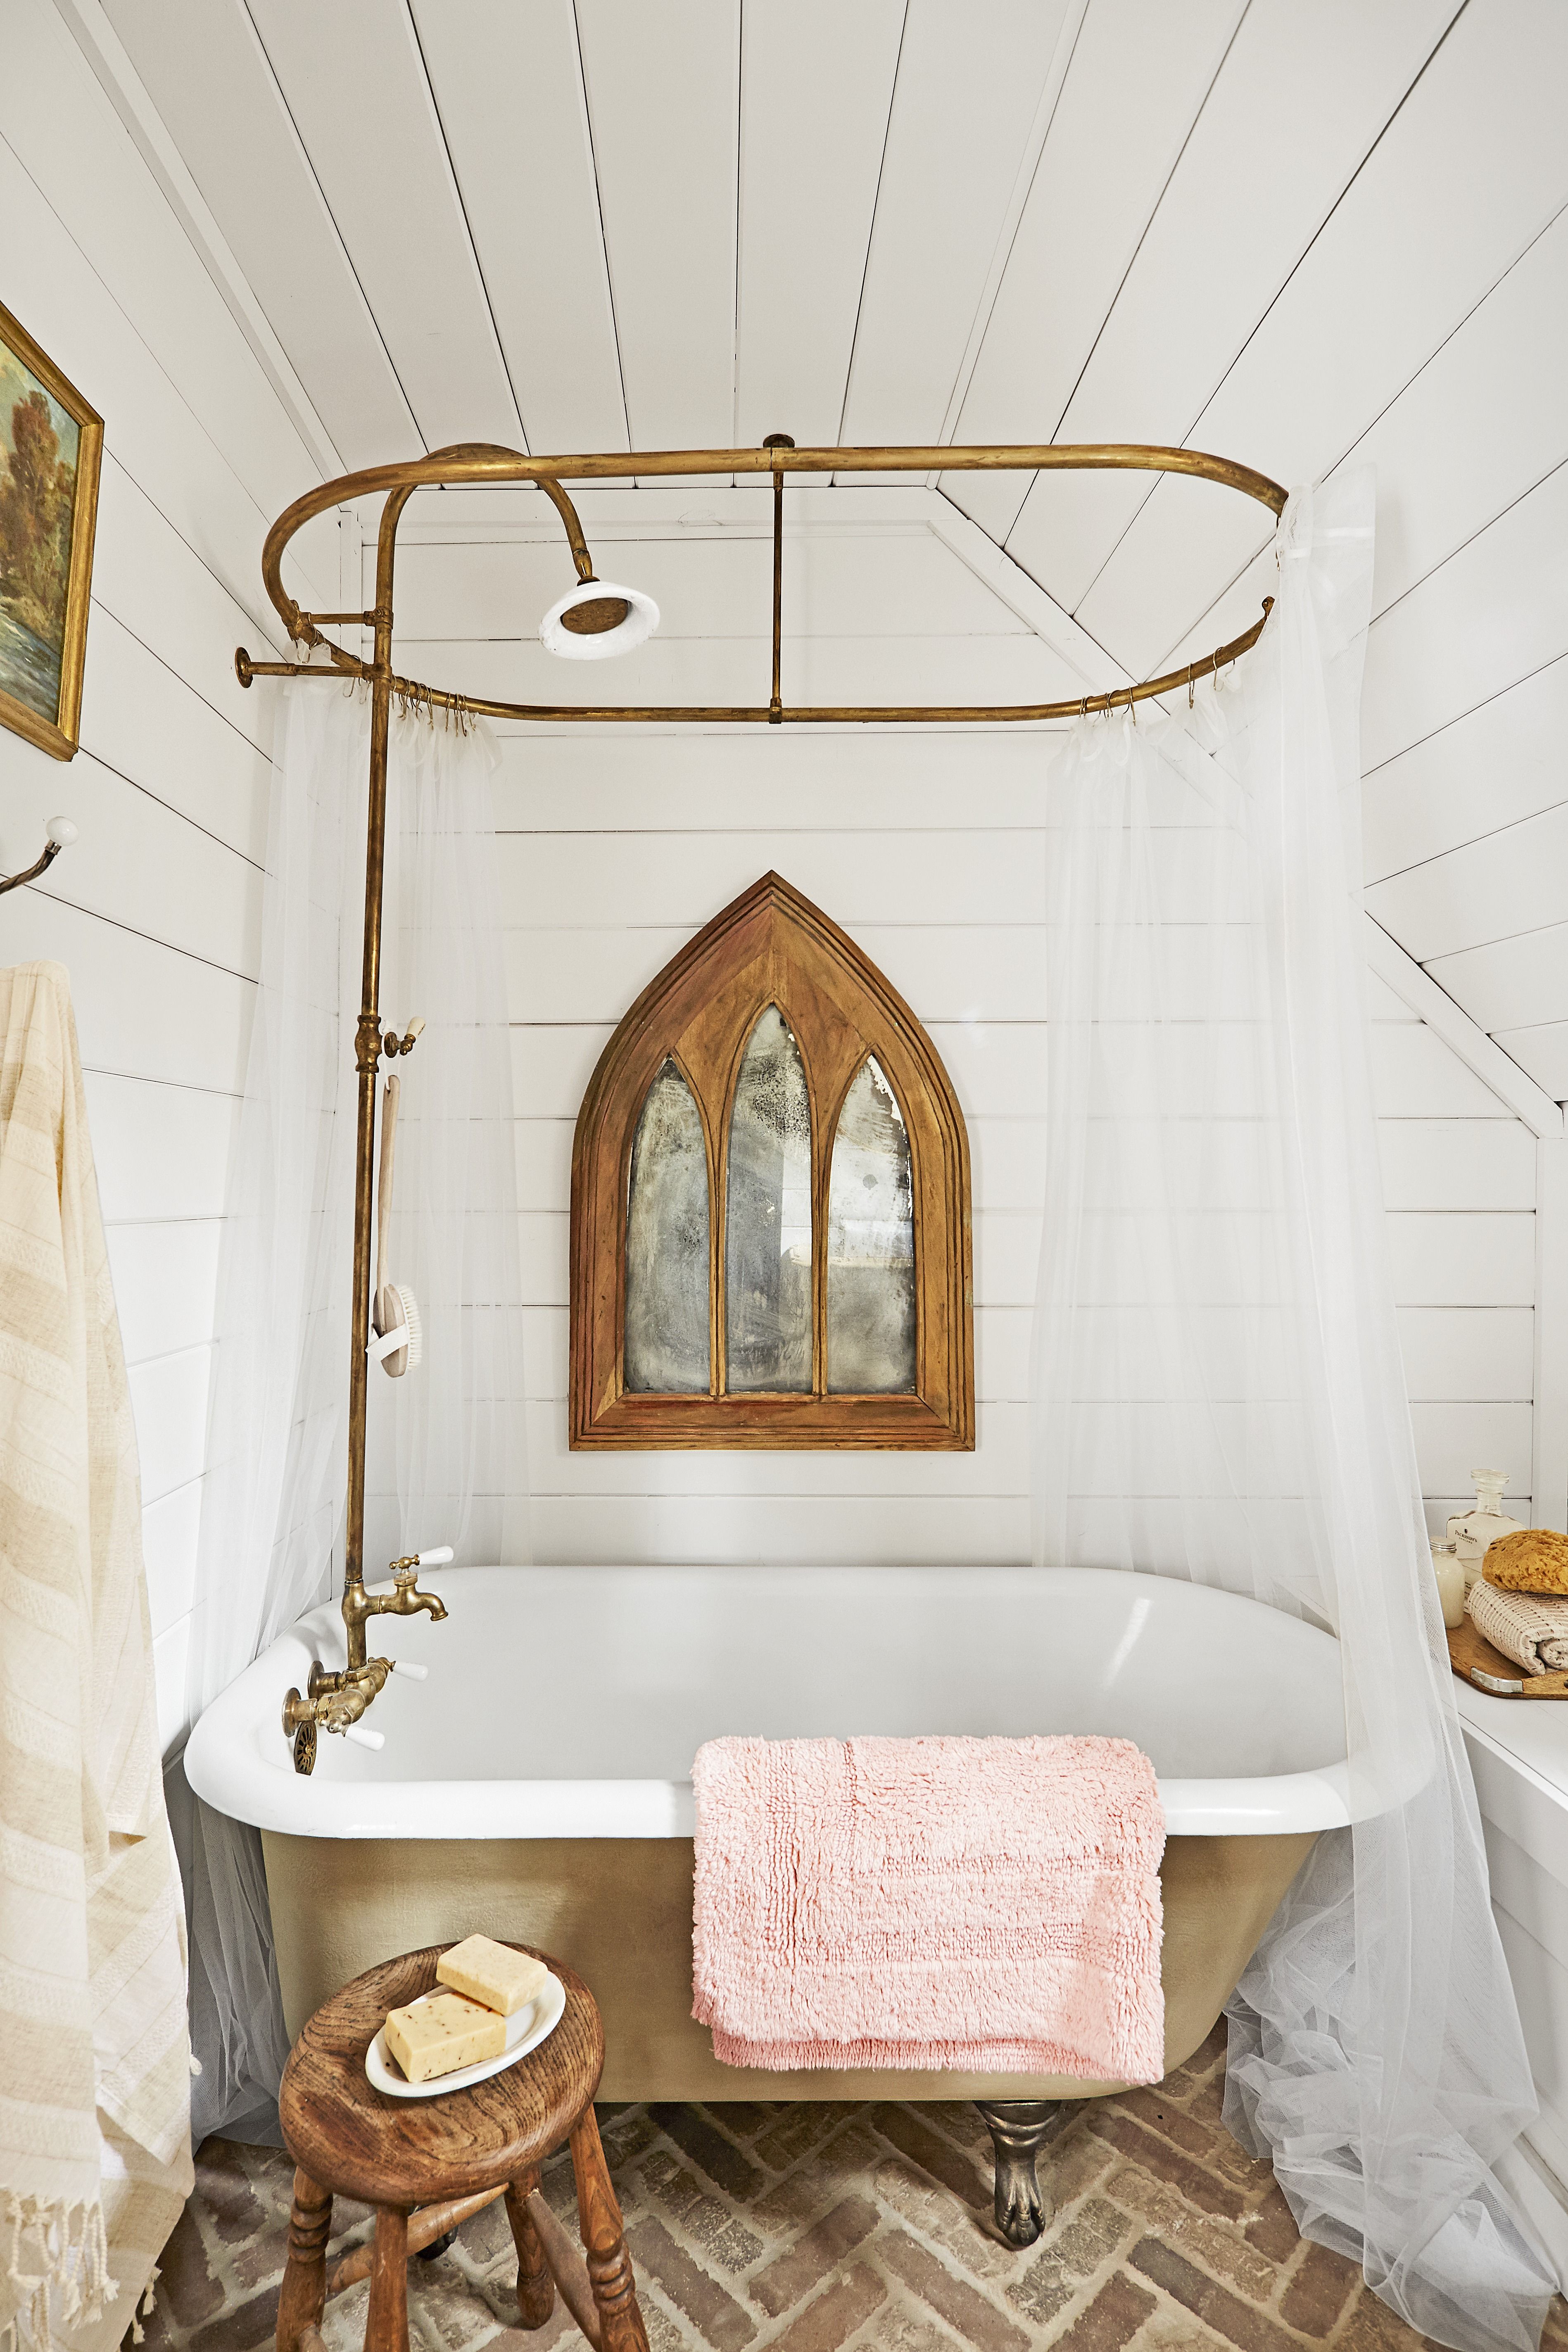 Clawfoot Tub Ideas For Your Bathroom, Clawfoot Bathtub And Shower